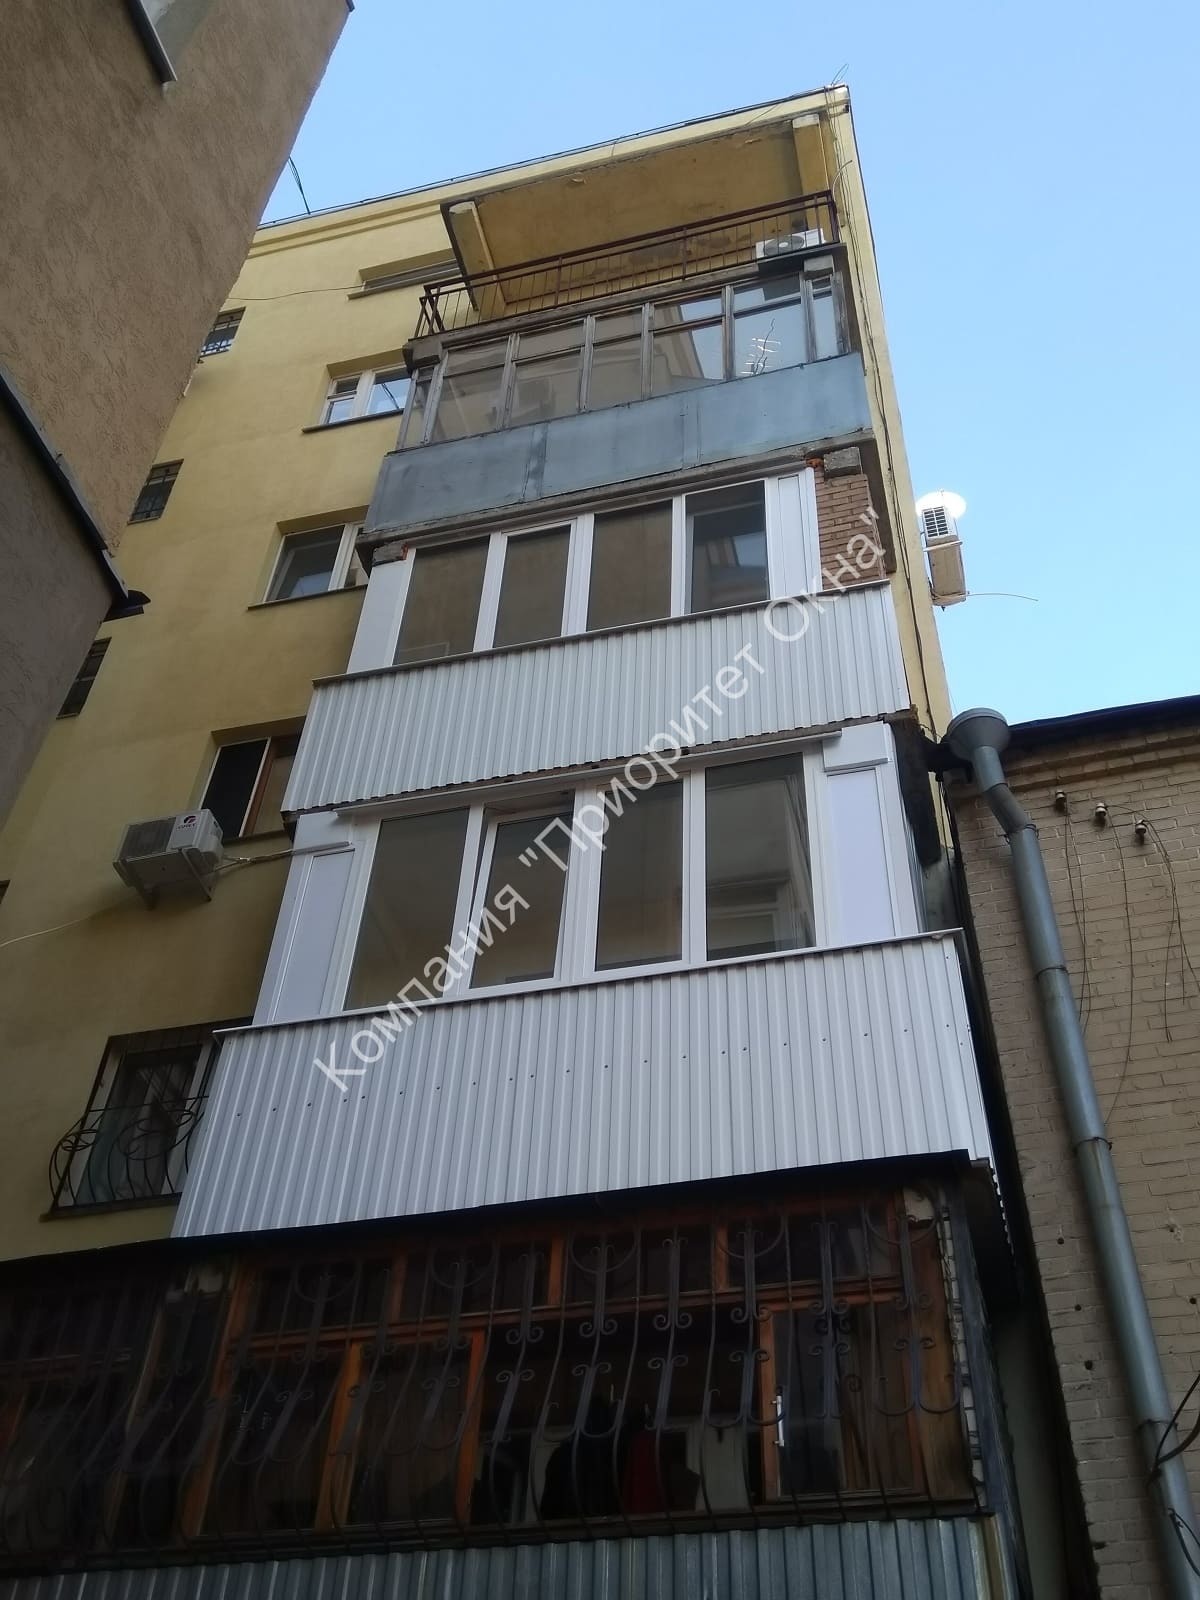 Пример остекления балкона с утеплением, по адресу: г. Самара, ул. Льва толстого 91 (2)